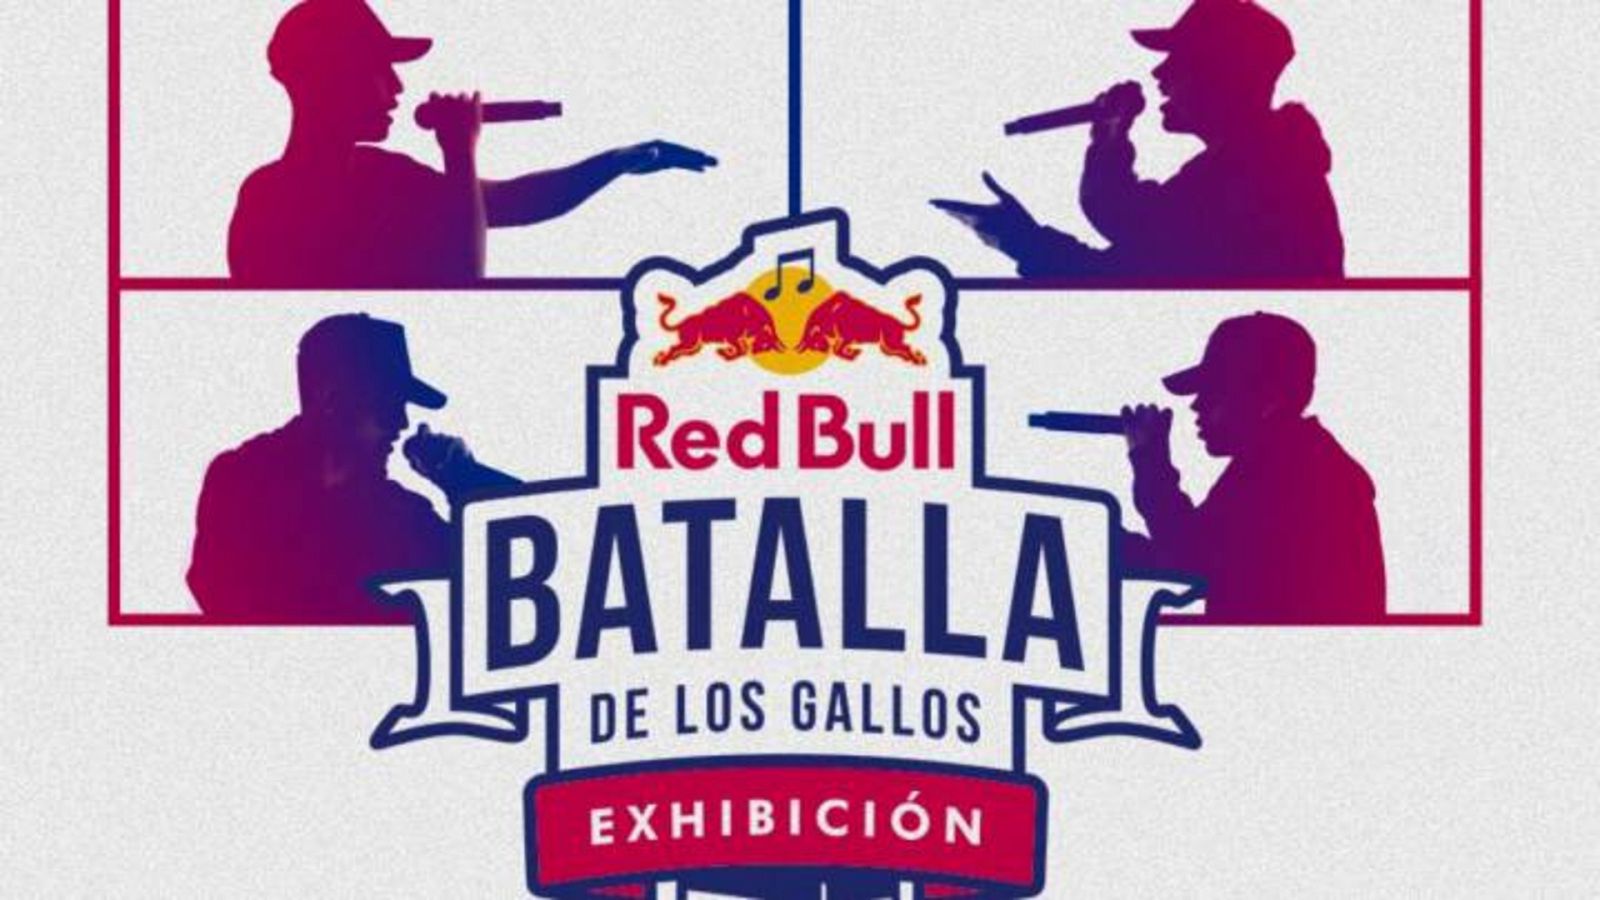 Lluvía de réplicas en la segunda edición de la Red Bull Batalla de los Gallos Exhibición